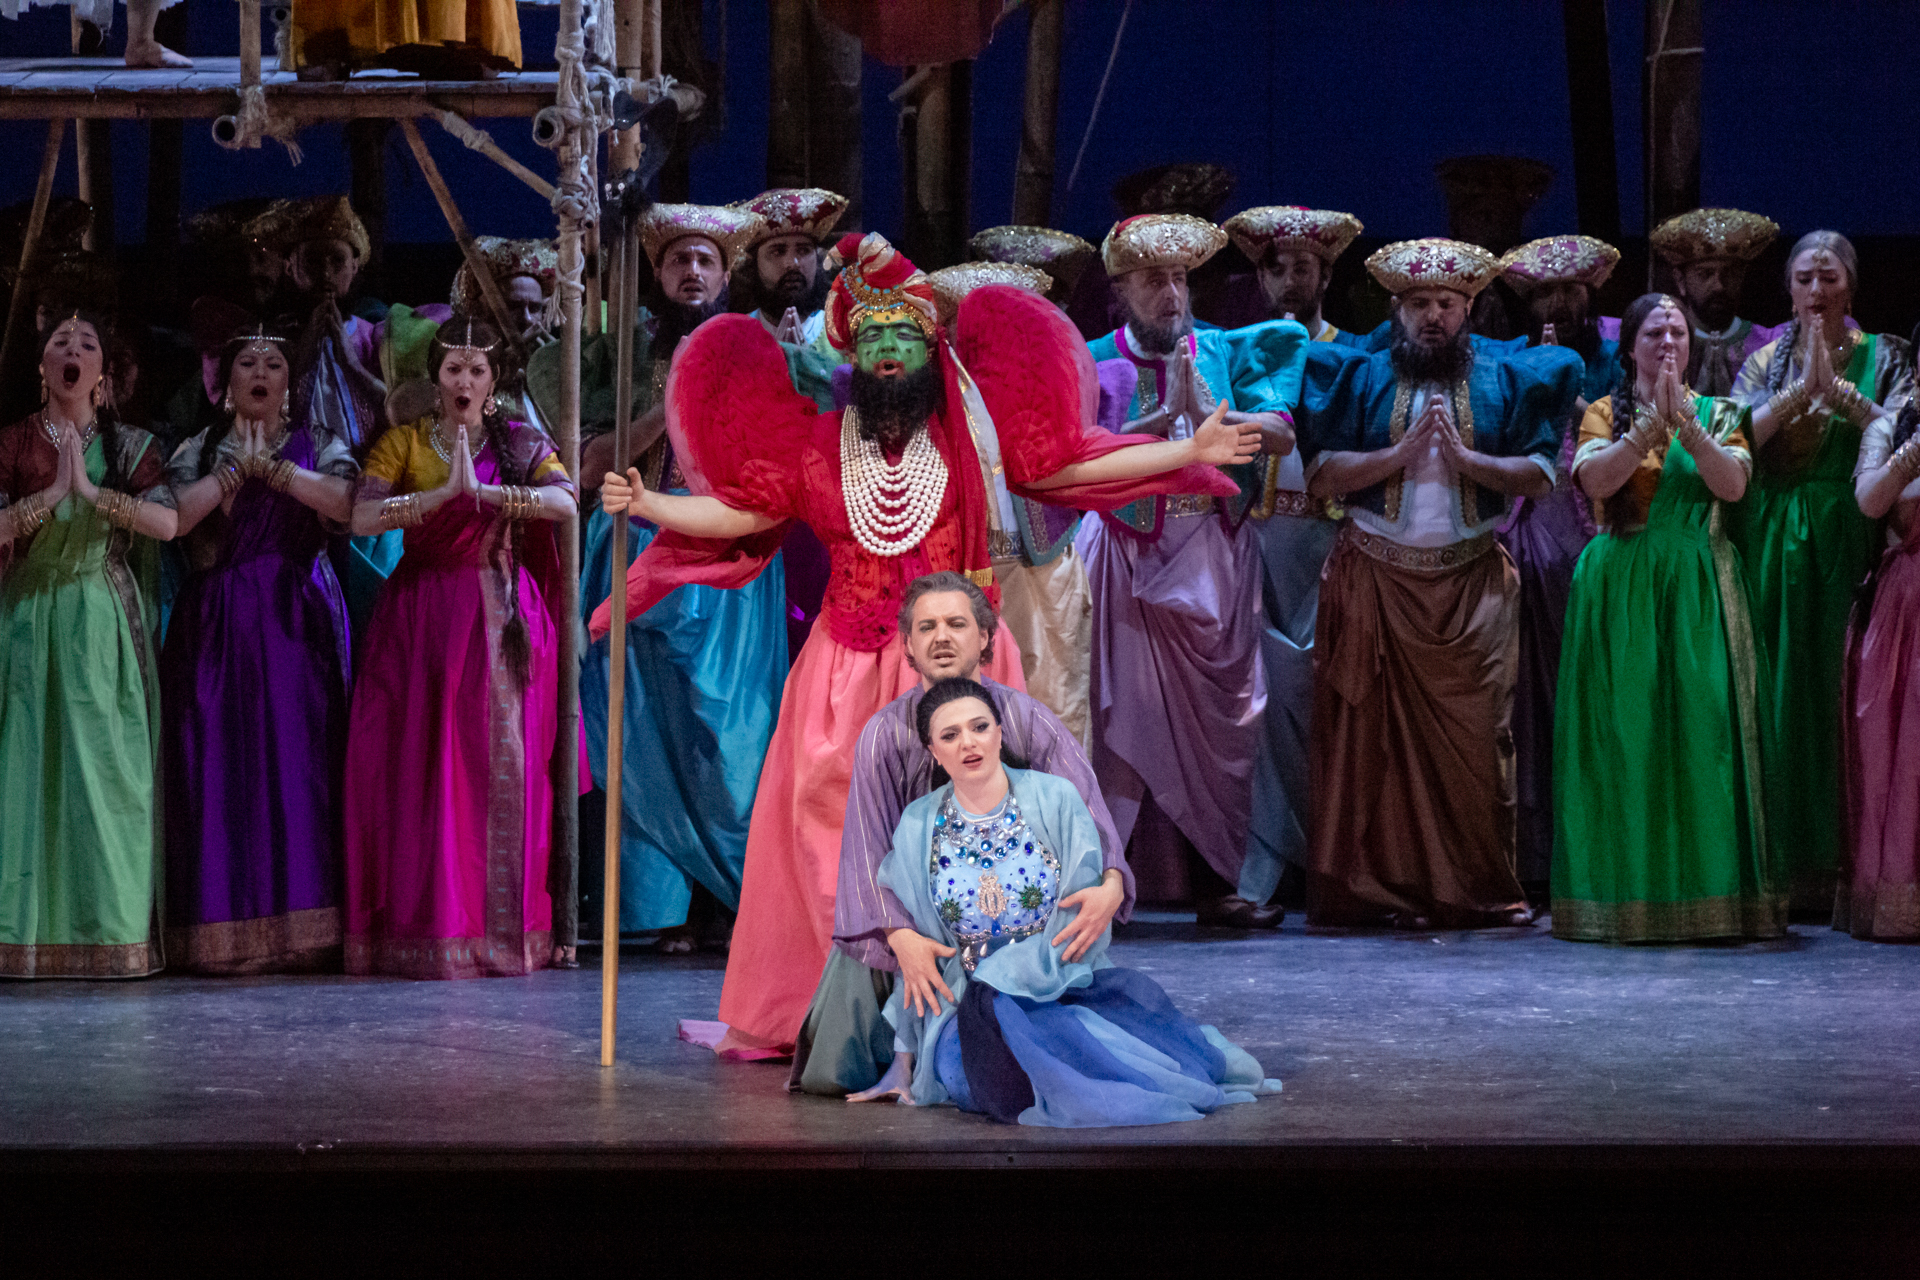 Les pêcheurs de perles di Bizet torna in scena al Teatro Massimo di Palermo dopo più di 50 anni.